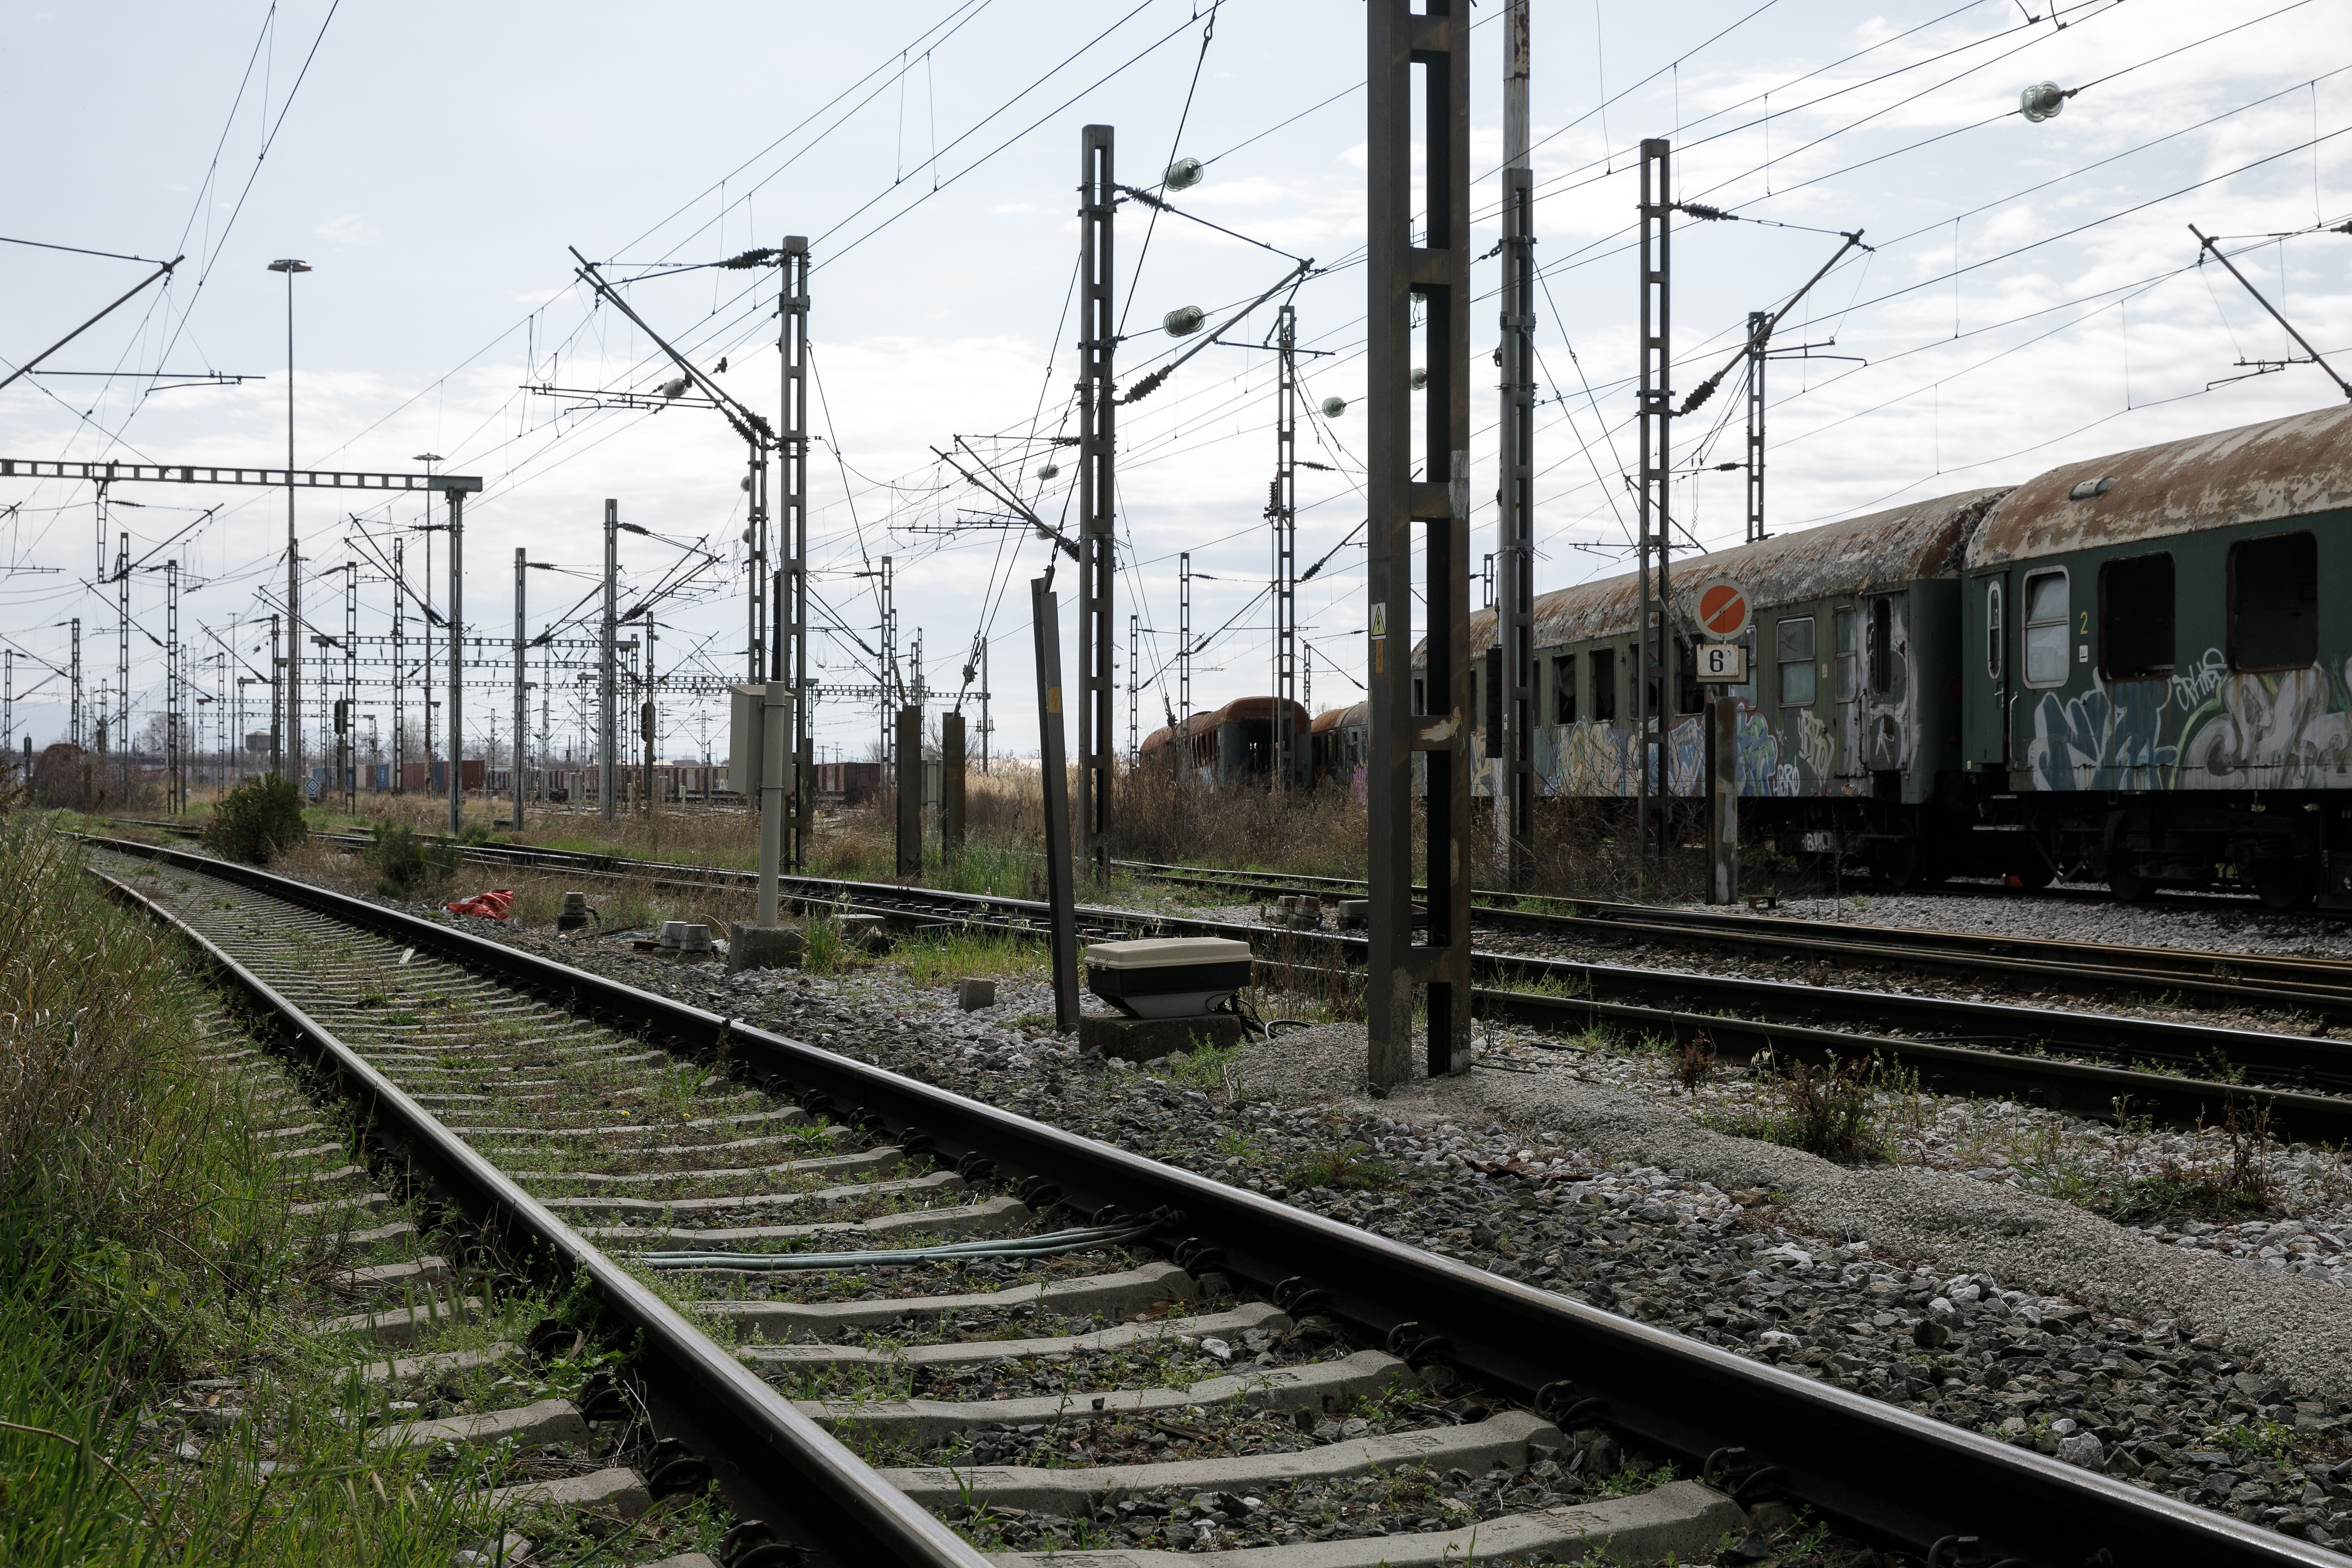 Ντογιάκος: Ανοίγουν οι φάκελοι με όλα τα θανατηφόρα σιδηροδρομικά δυστυχήματα